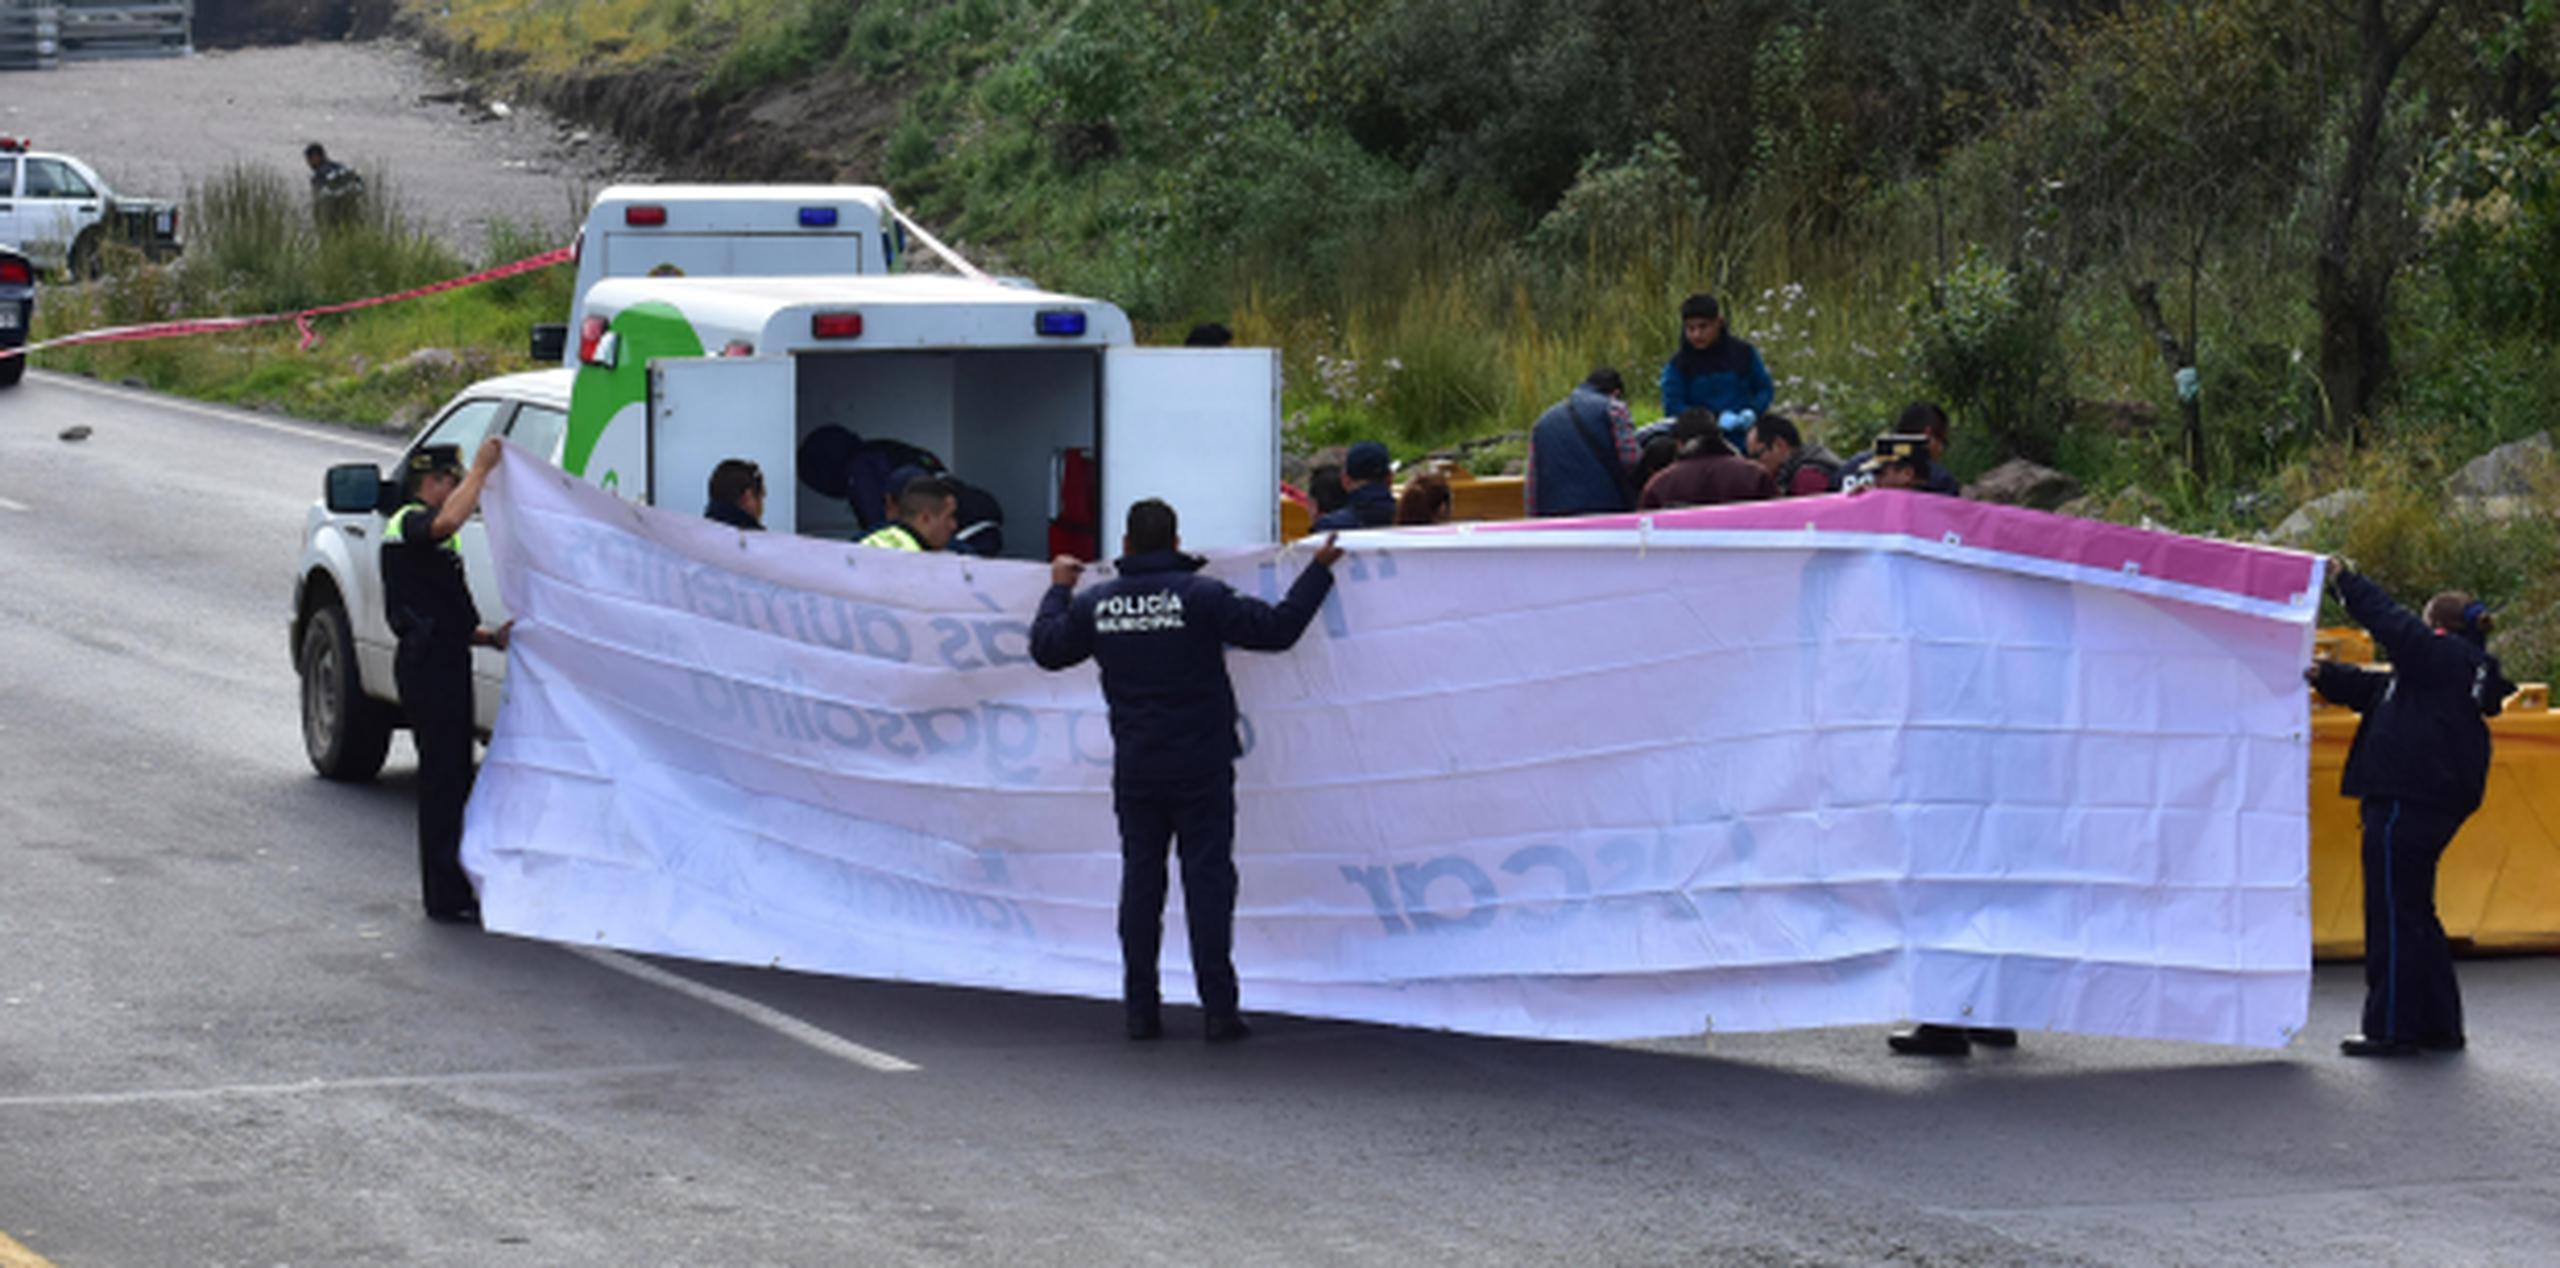 Cada vez más pasajeros se han estado armando en reacción a un aumento de robos a bordo de autobuses en los suburbios de la capital mexicana. (Agencia EFE)